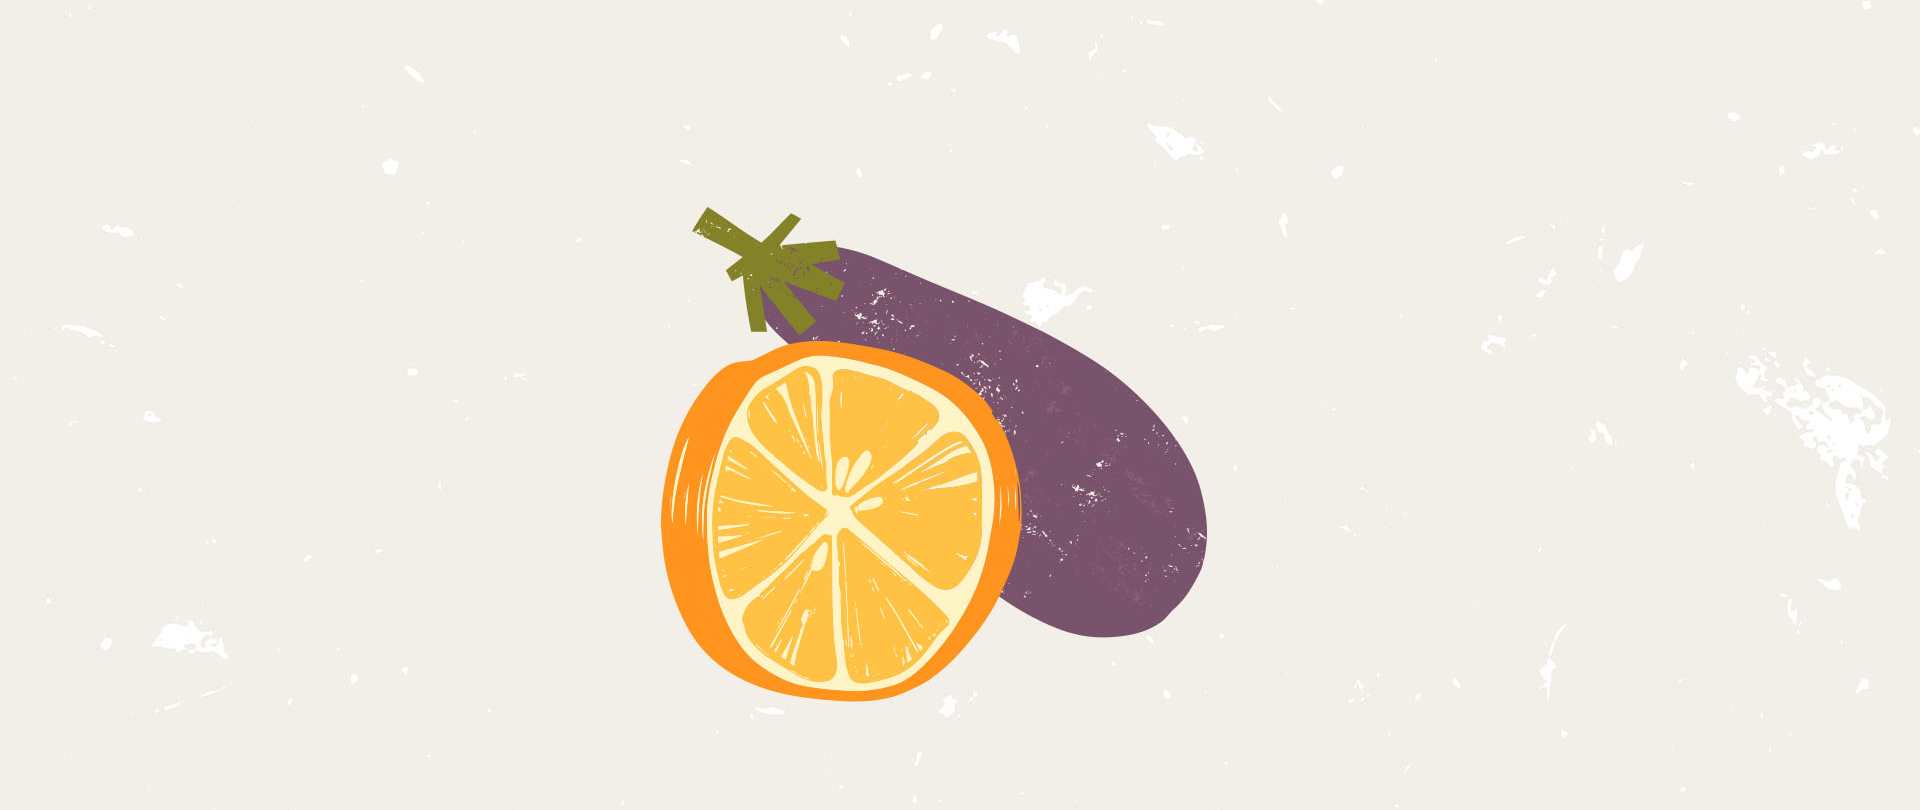 LandSeaTree2ndillustration_aubergine_orange